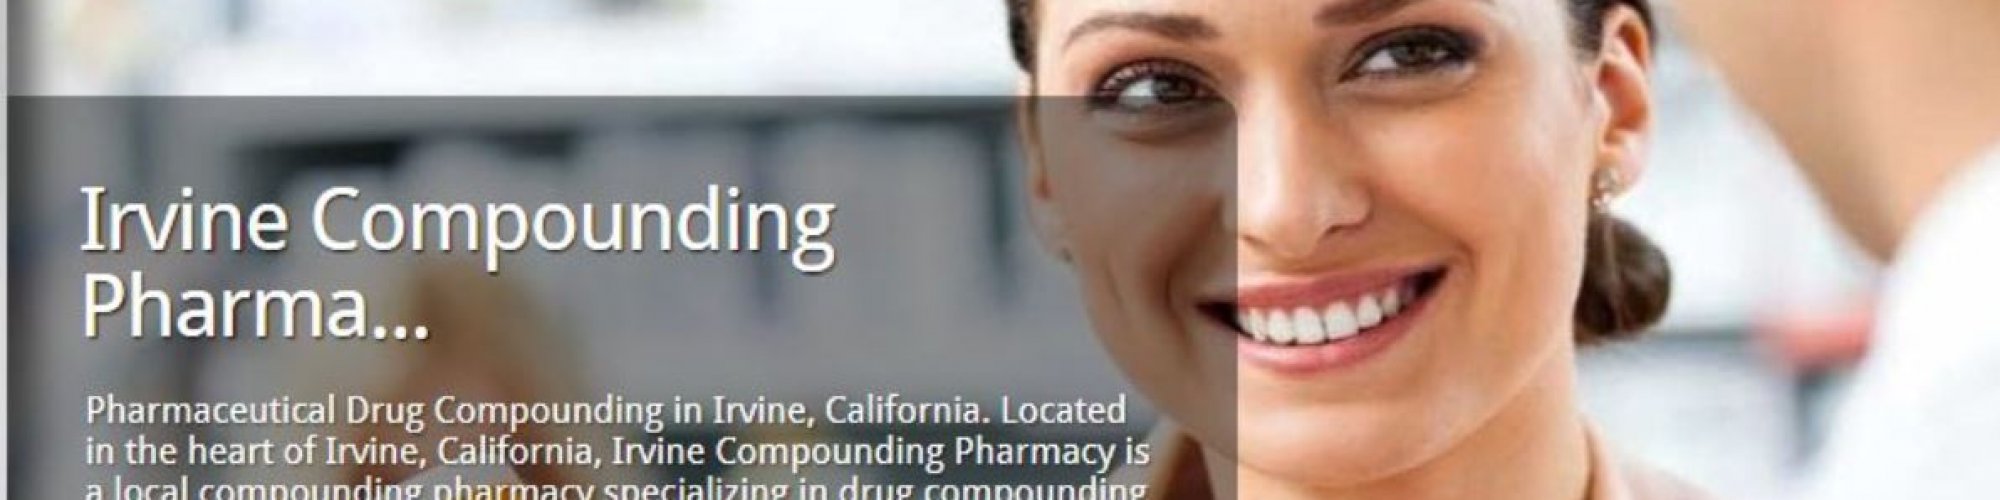 Irvine Compounding Pharmacy